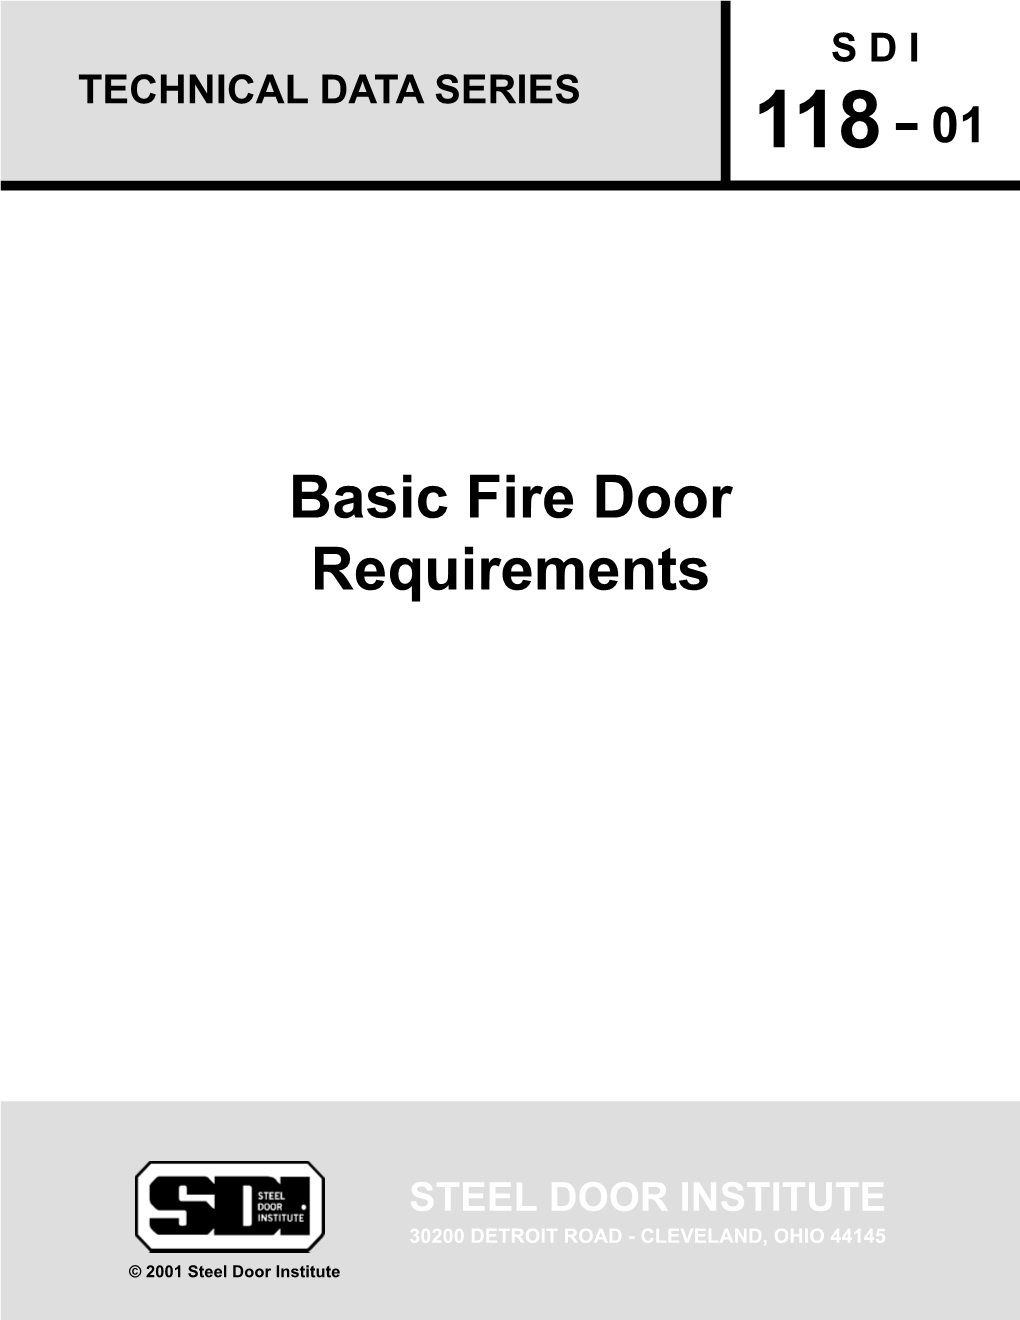 Basic Fire Door Requirements